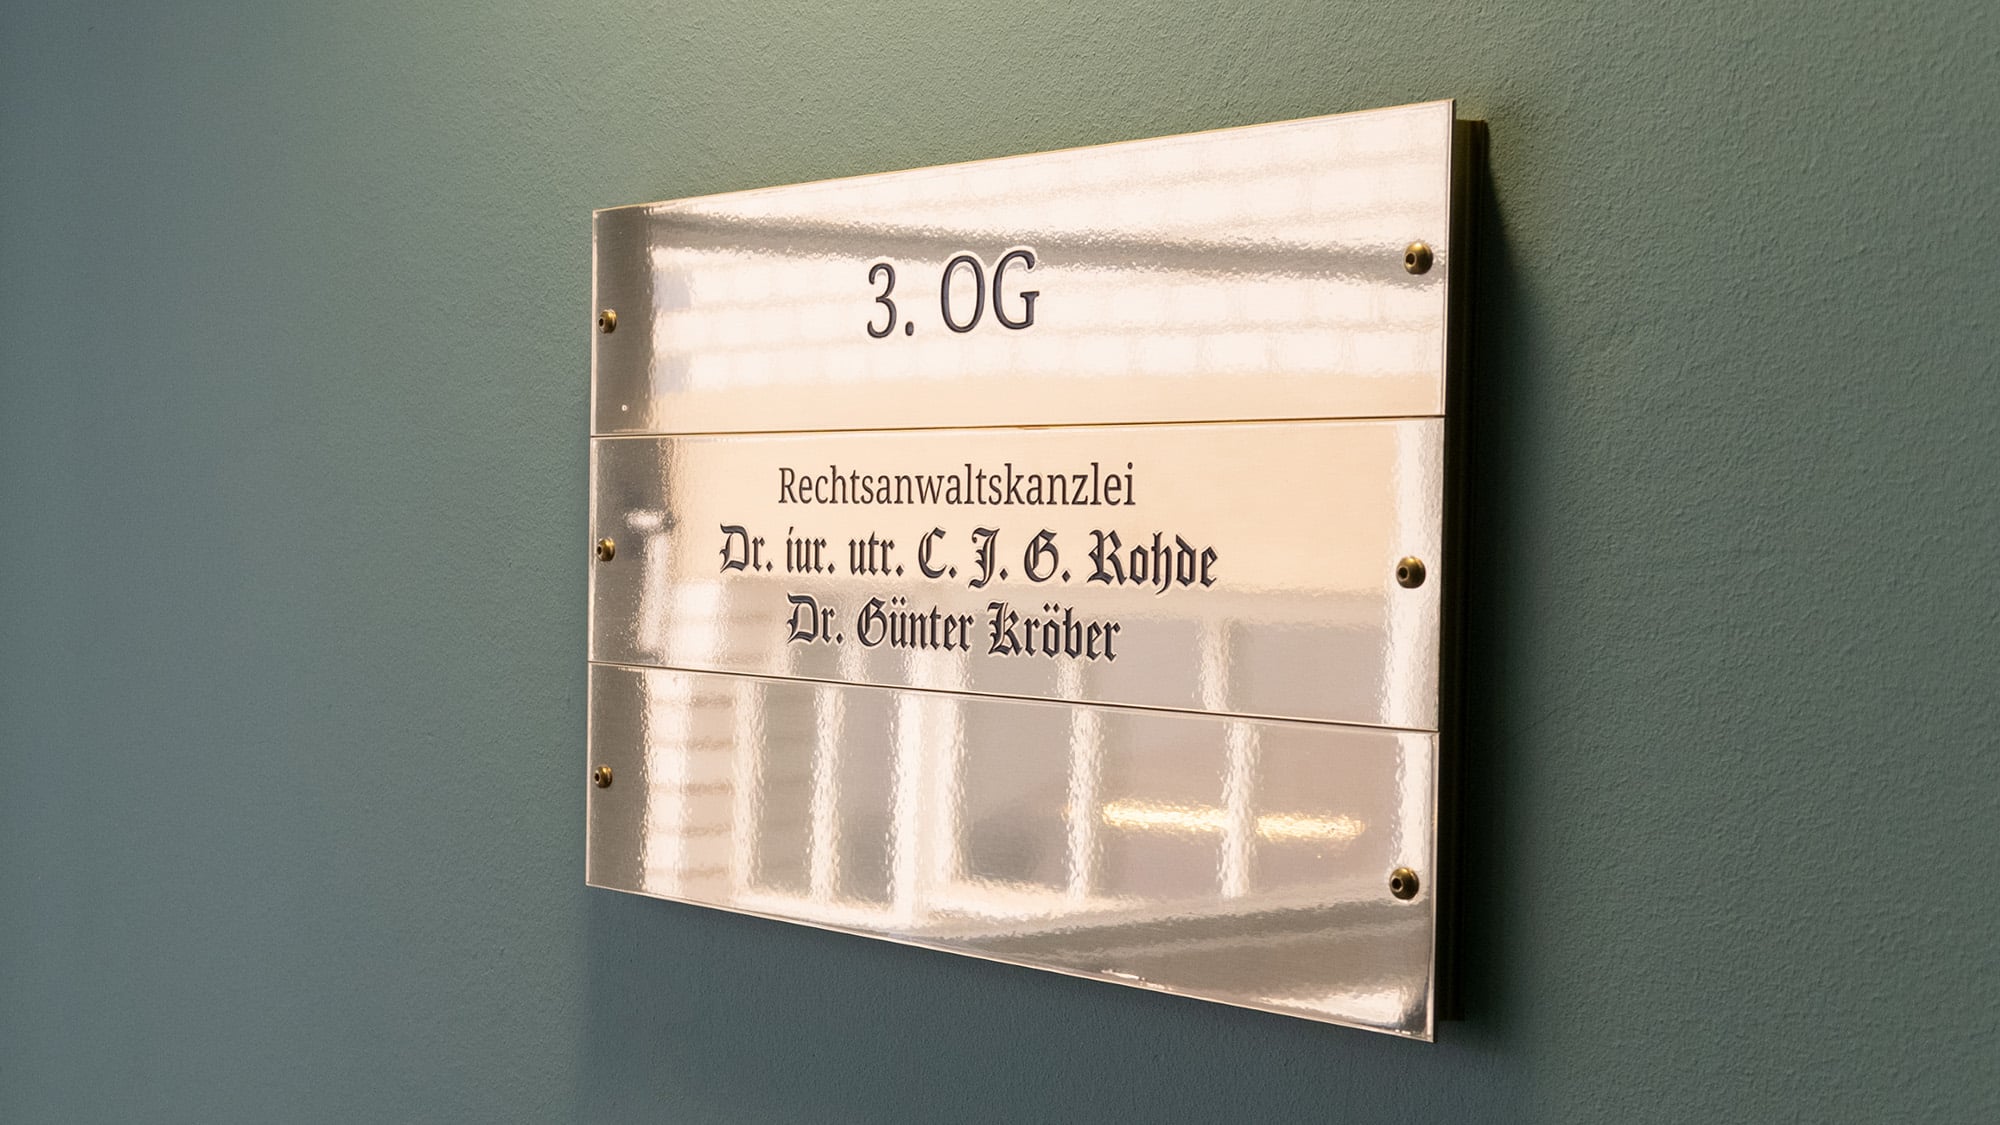 Steibs Hof Signage